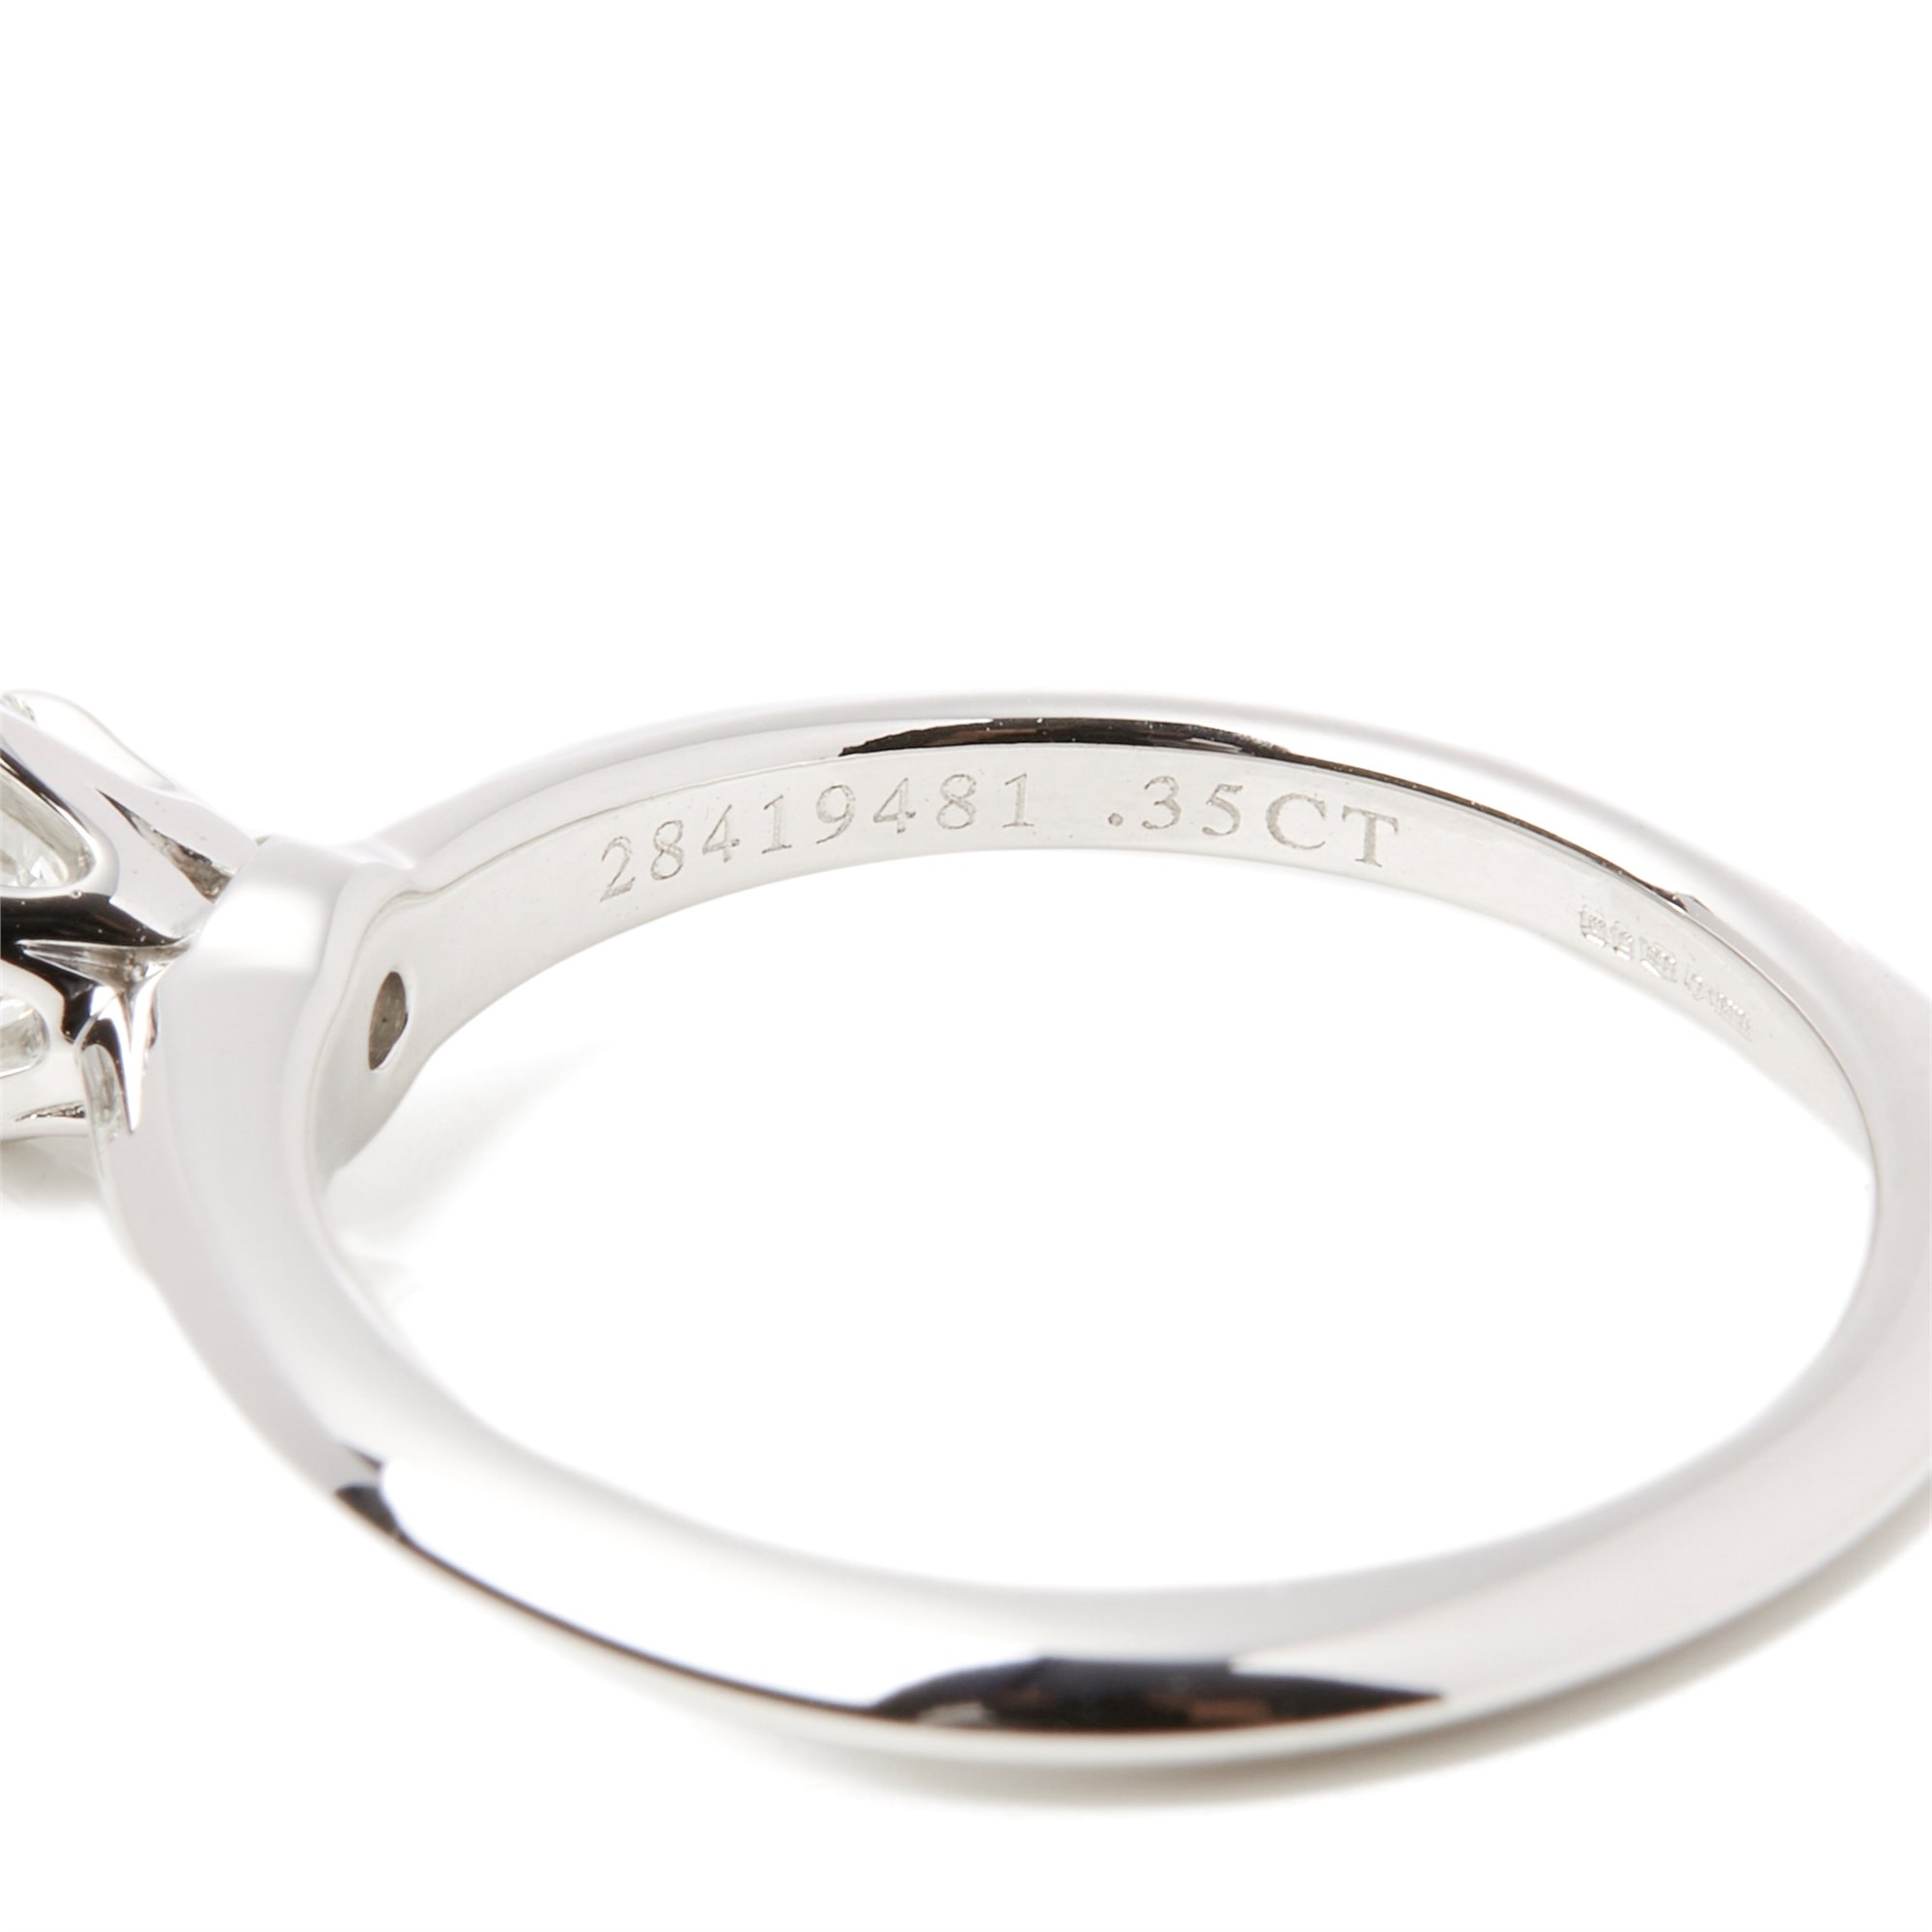 Tiffany & Co. Platinum 0.35ct Round Brilliant Cut Diamond Solitaire Ring